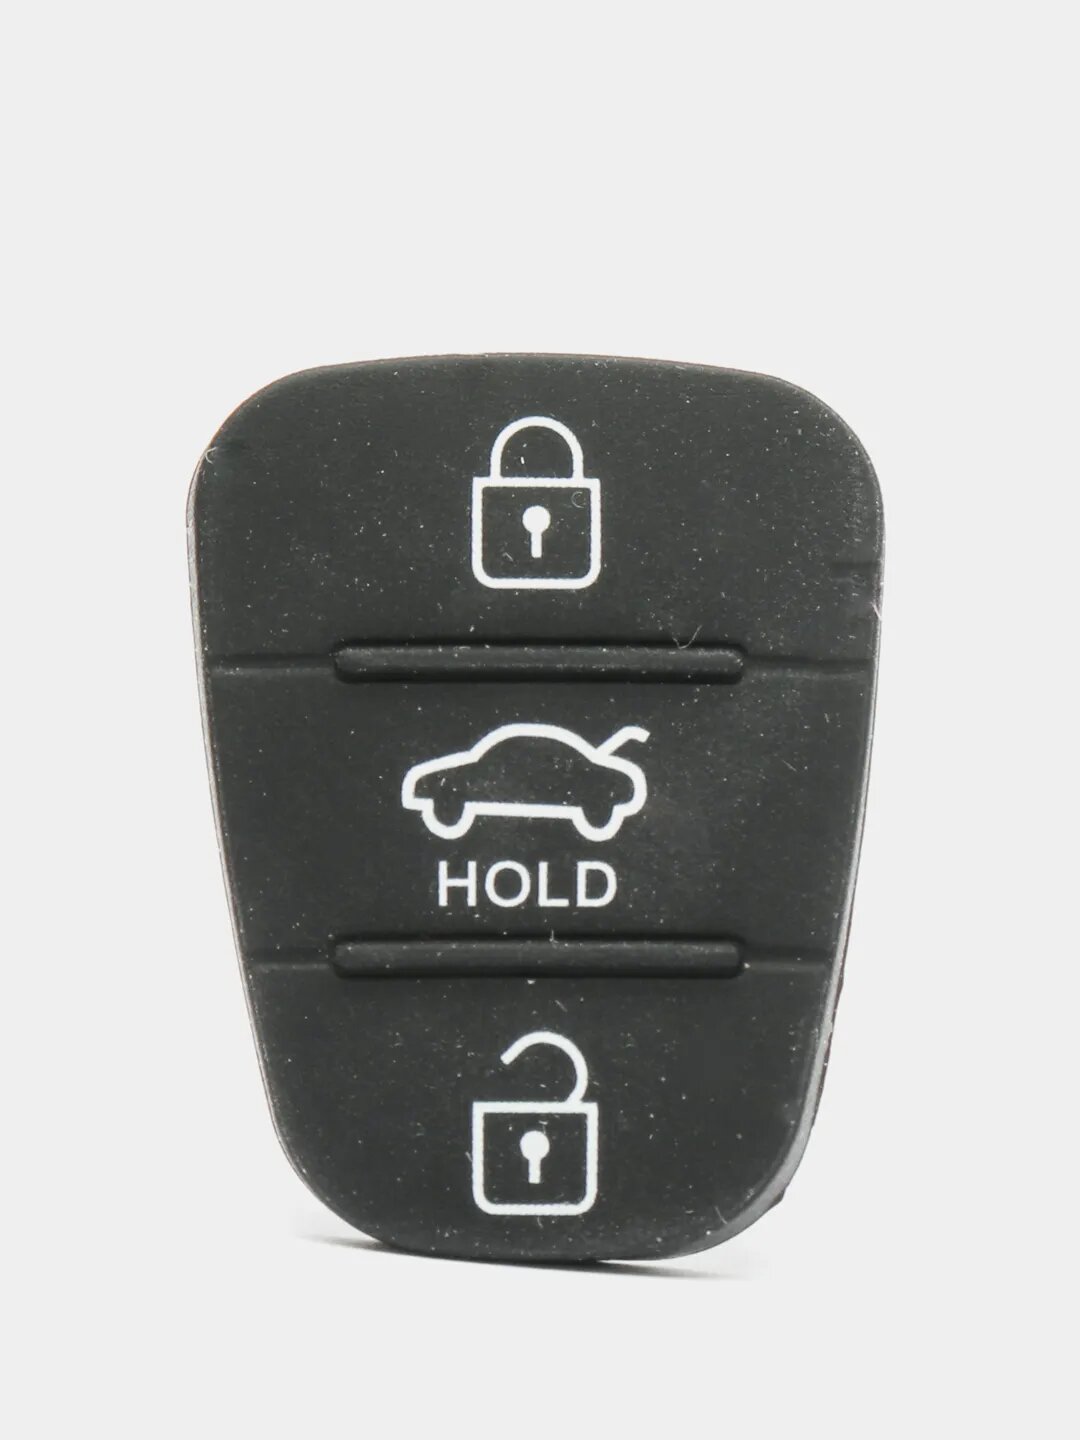 Кнопка для выкидного ключа зажигания KIA/Hyundai/Киа/Хендай (Hold)